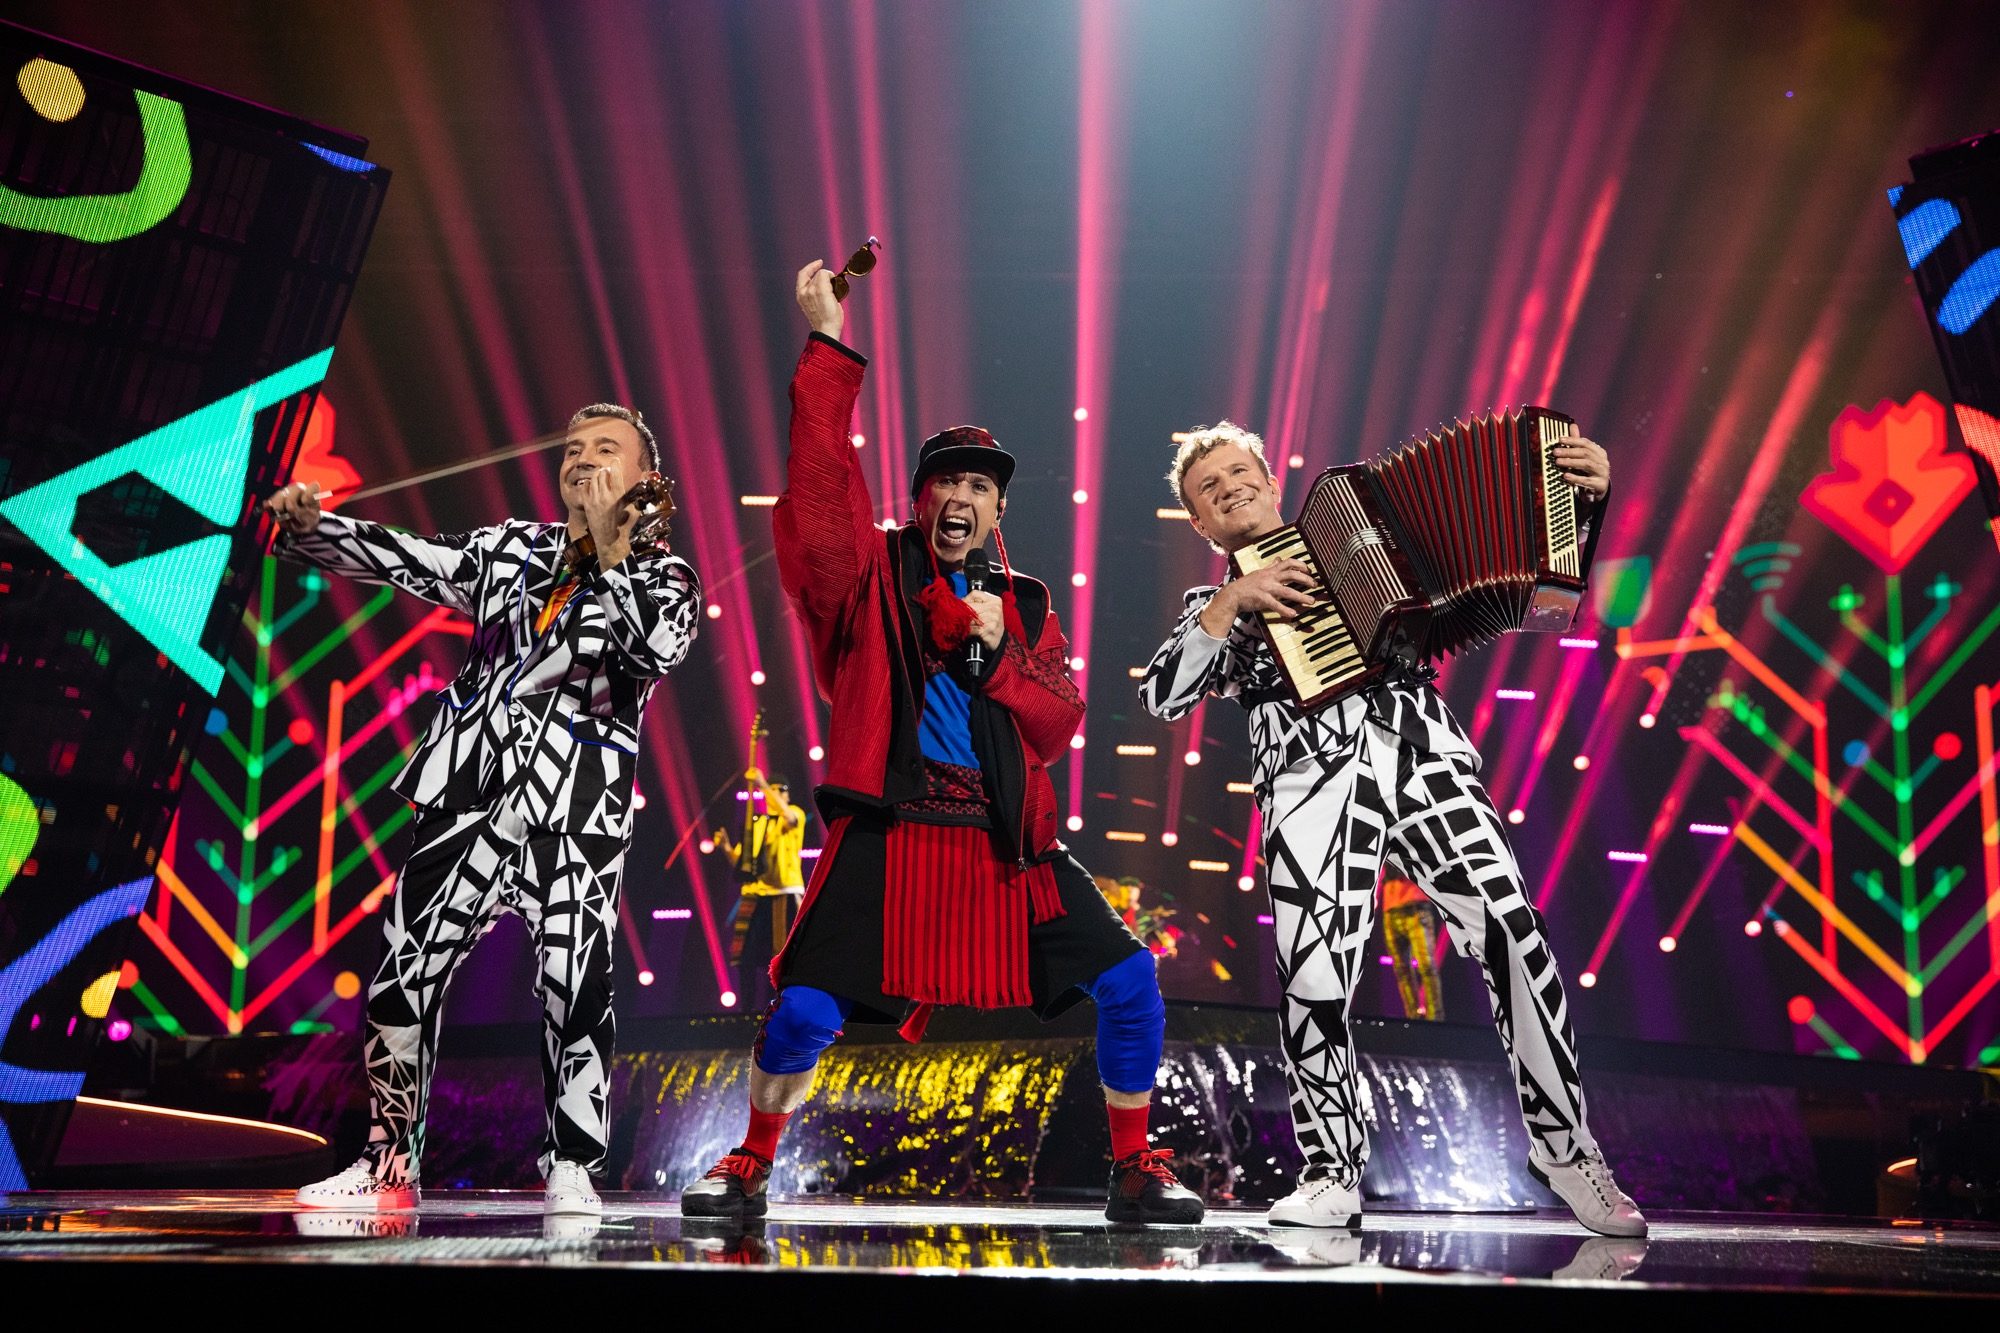 Moldova’s Zdob si Zdub & Advahov Brothers Performing at the first semi final